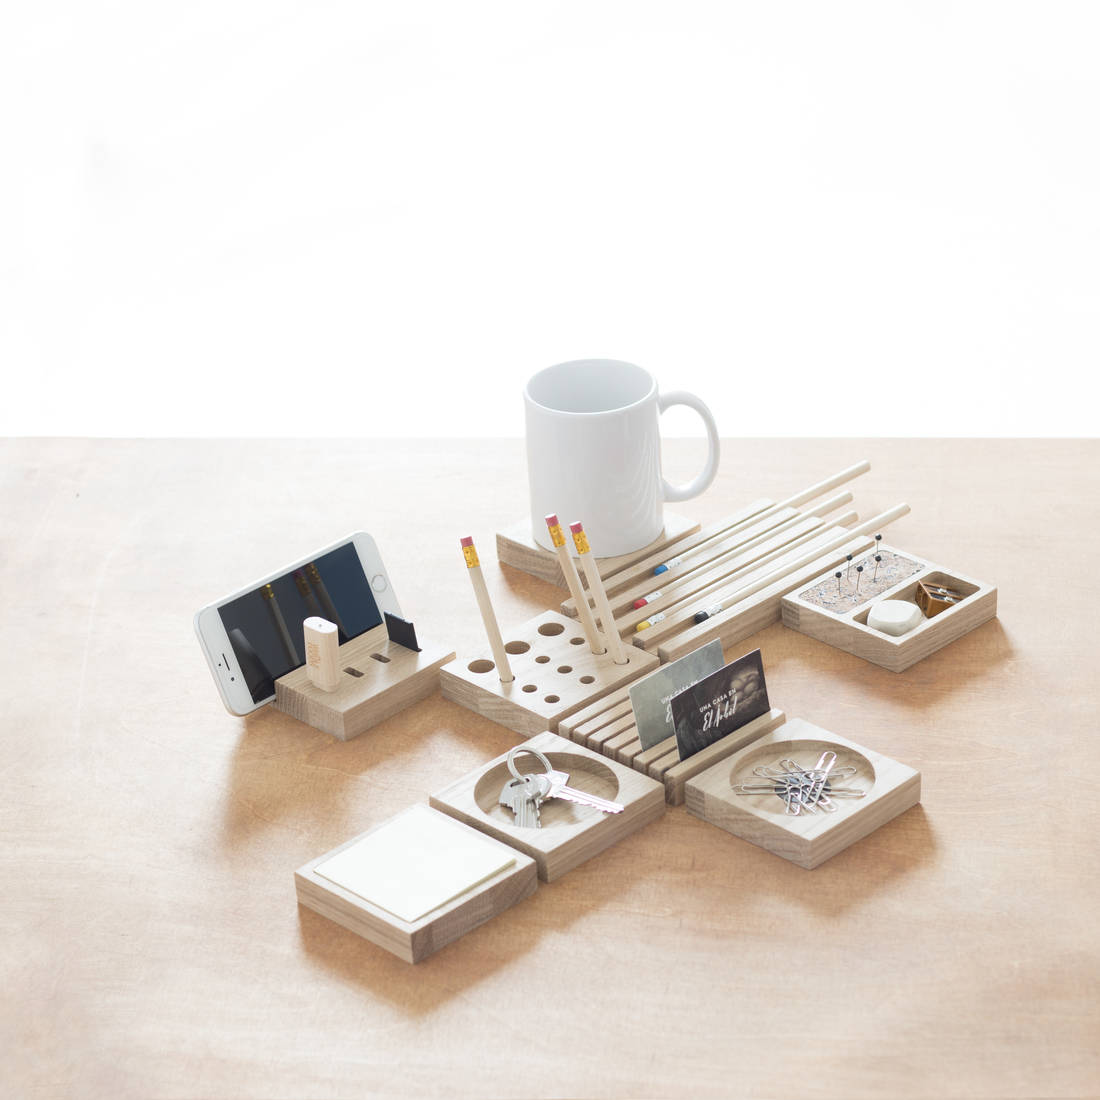 Pack modular accesorios de escritorio